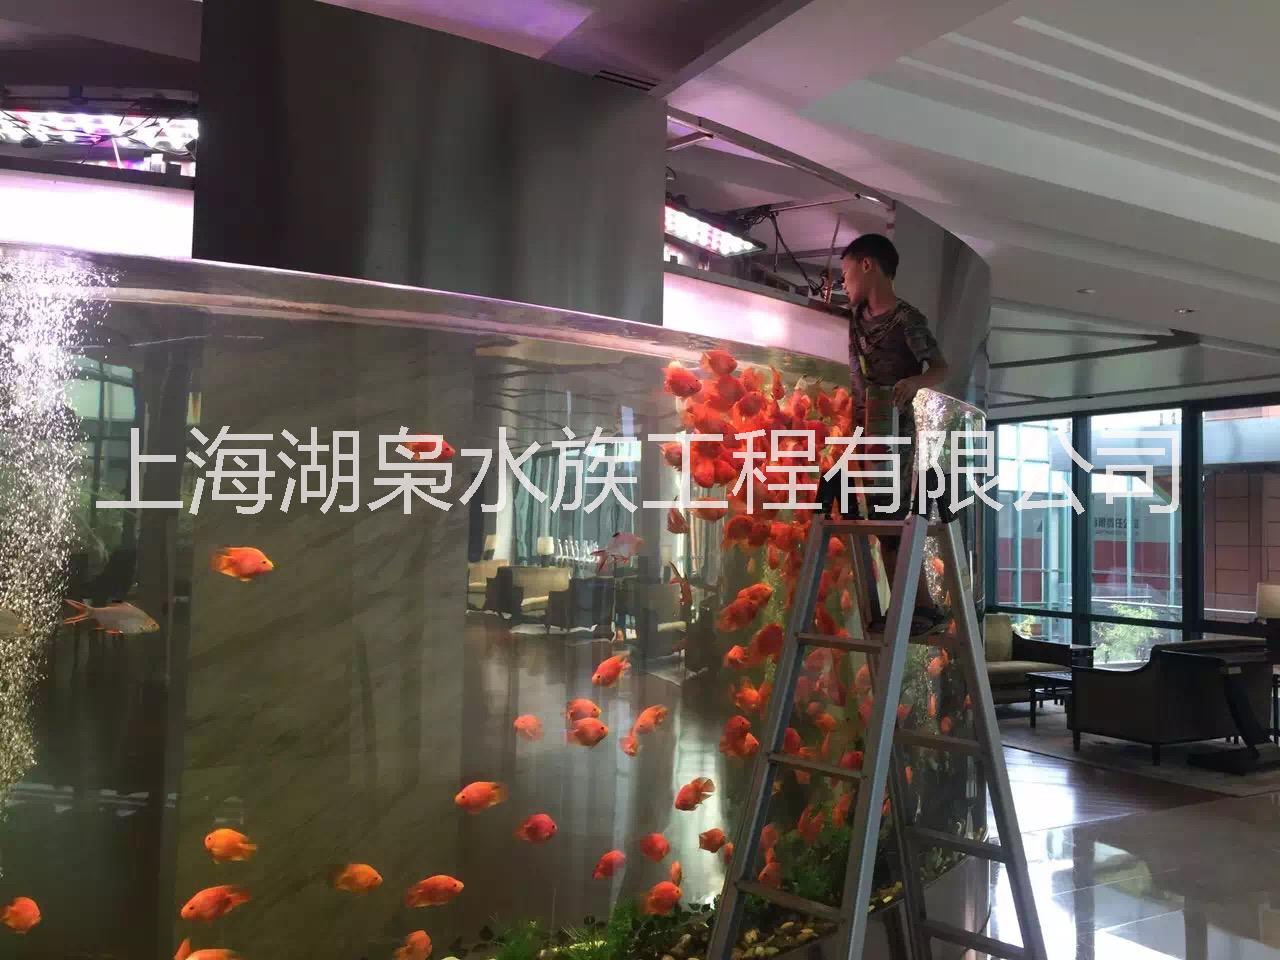 广州壁挂式鱼缸专业订做壁挂式鱼缸  壁挂式鱼缸定制  客厅挂墙式鱼缸